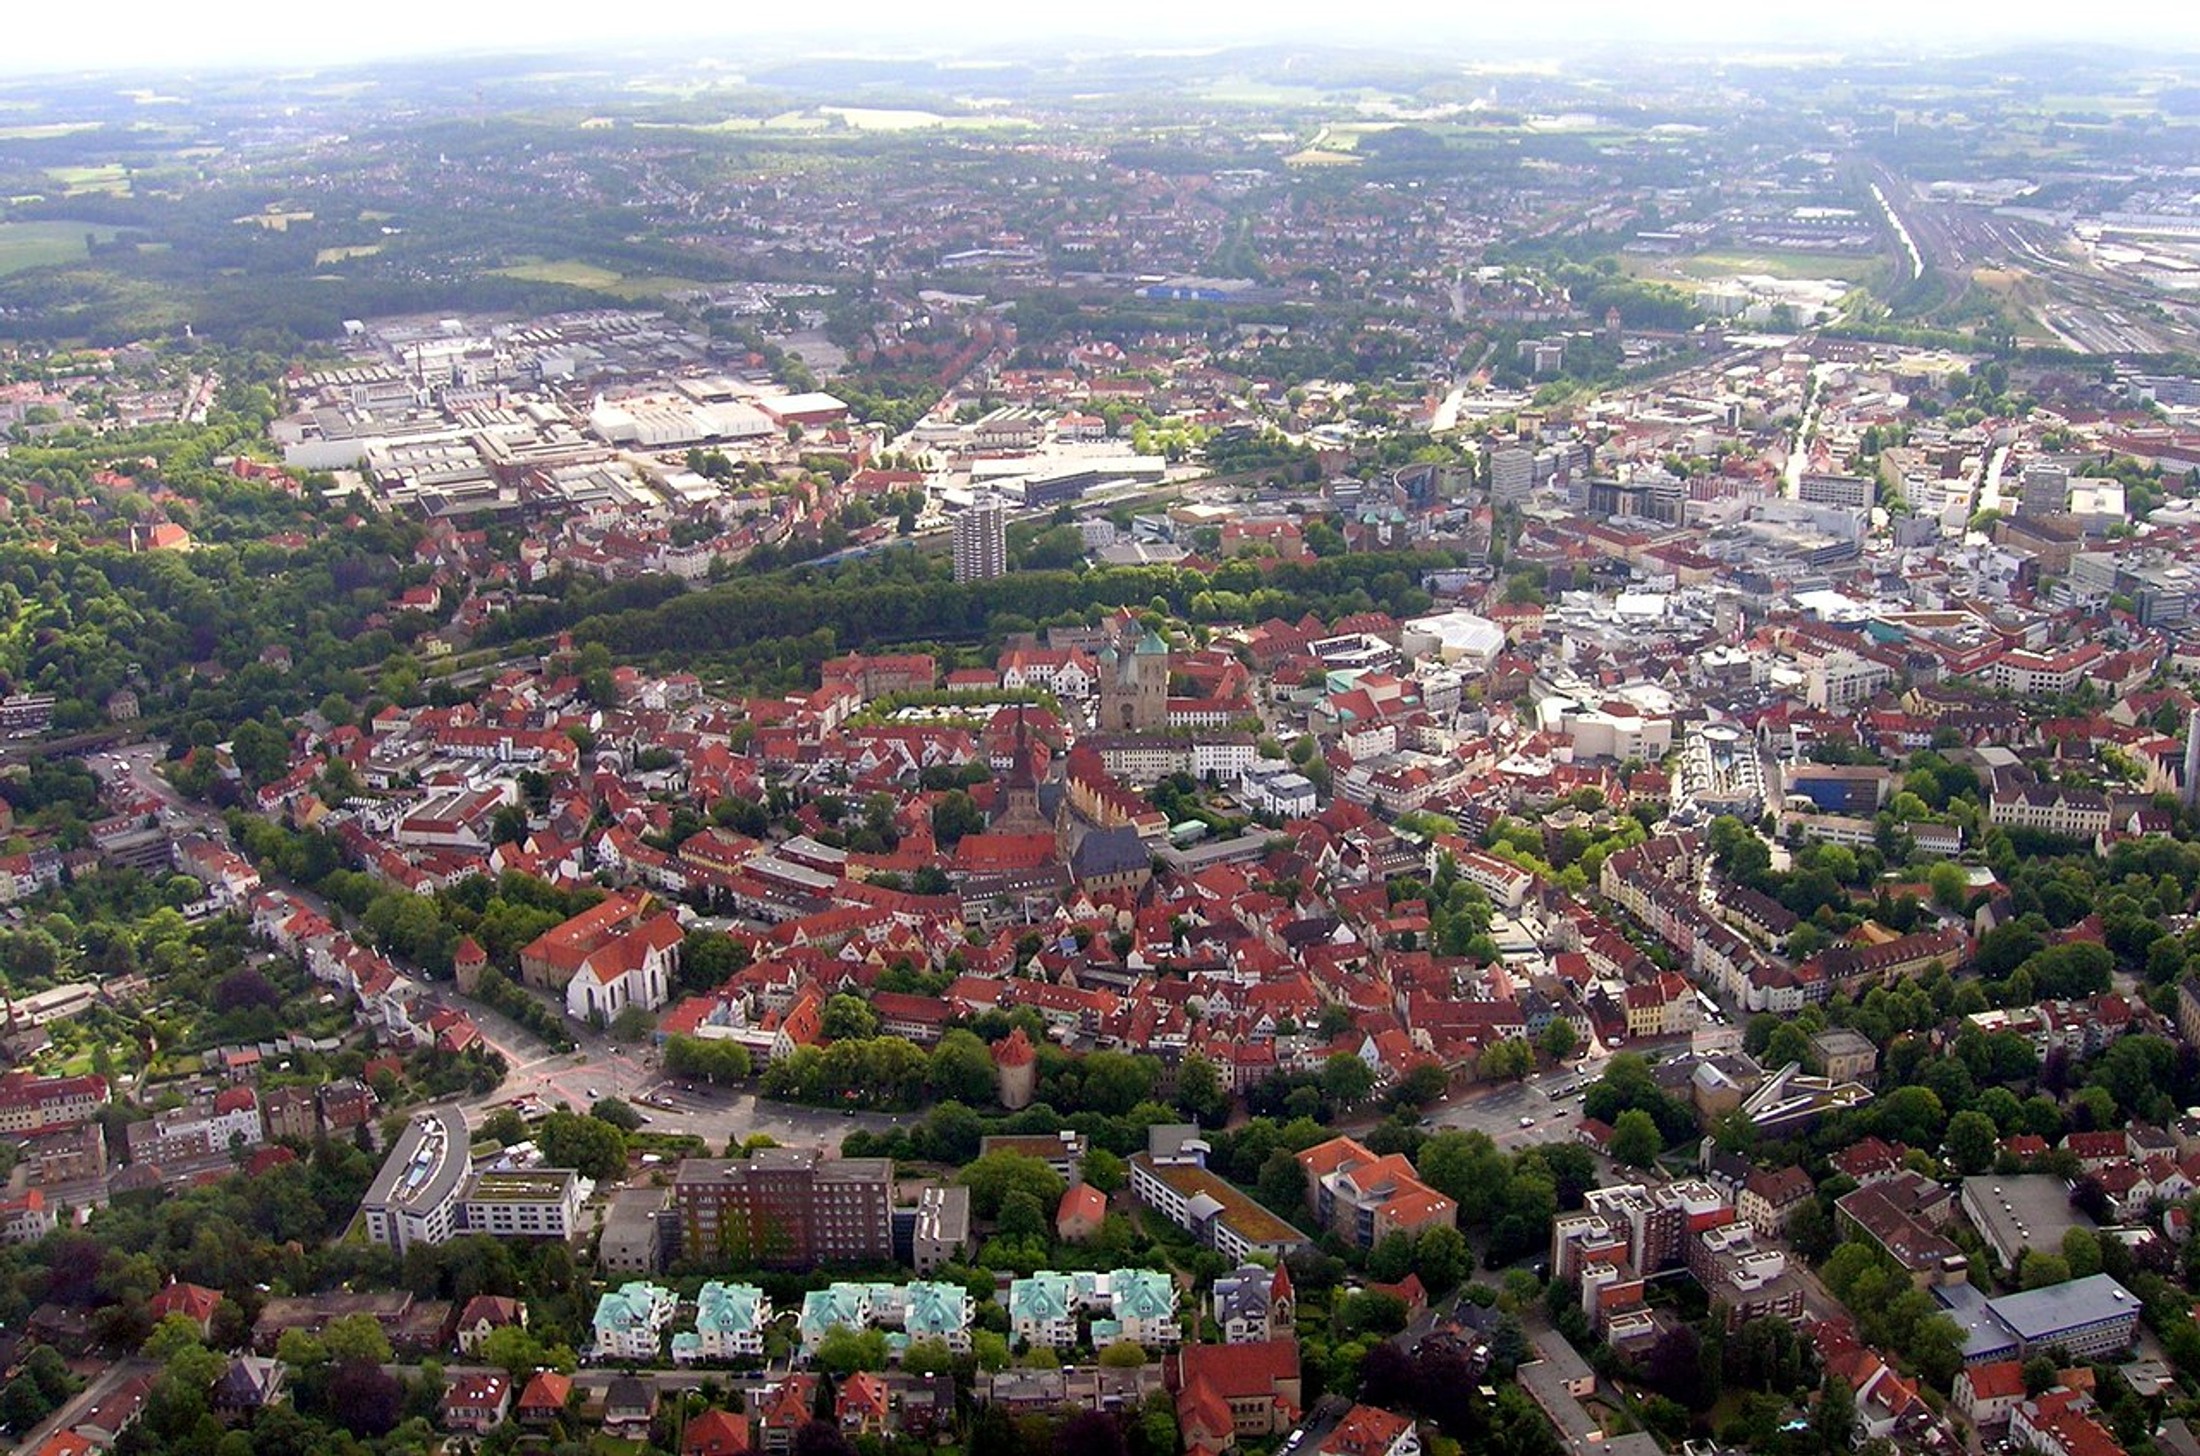 Osnabrück.jpg
				